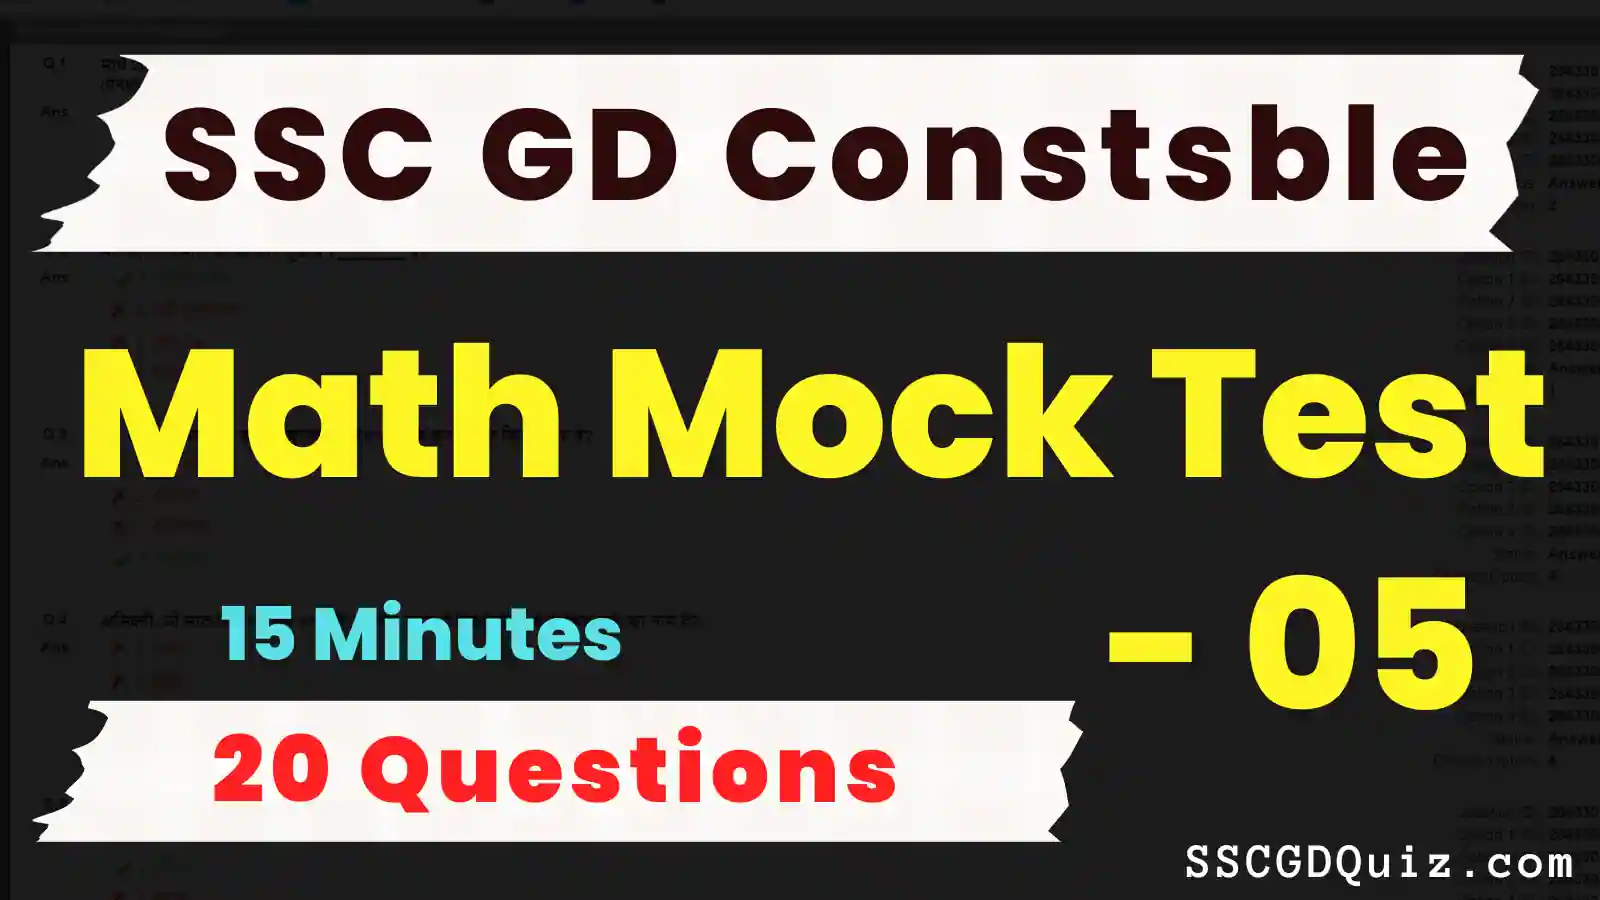 SSC GD Constable Math Mock Test – 05